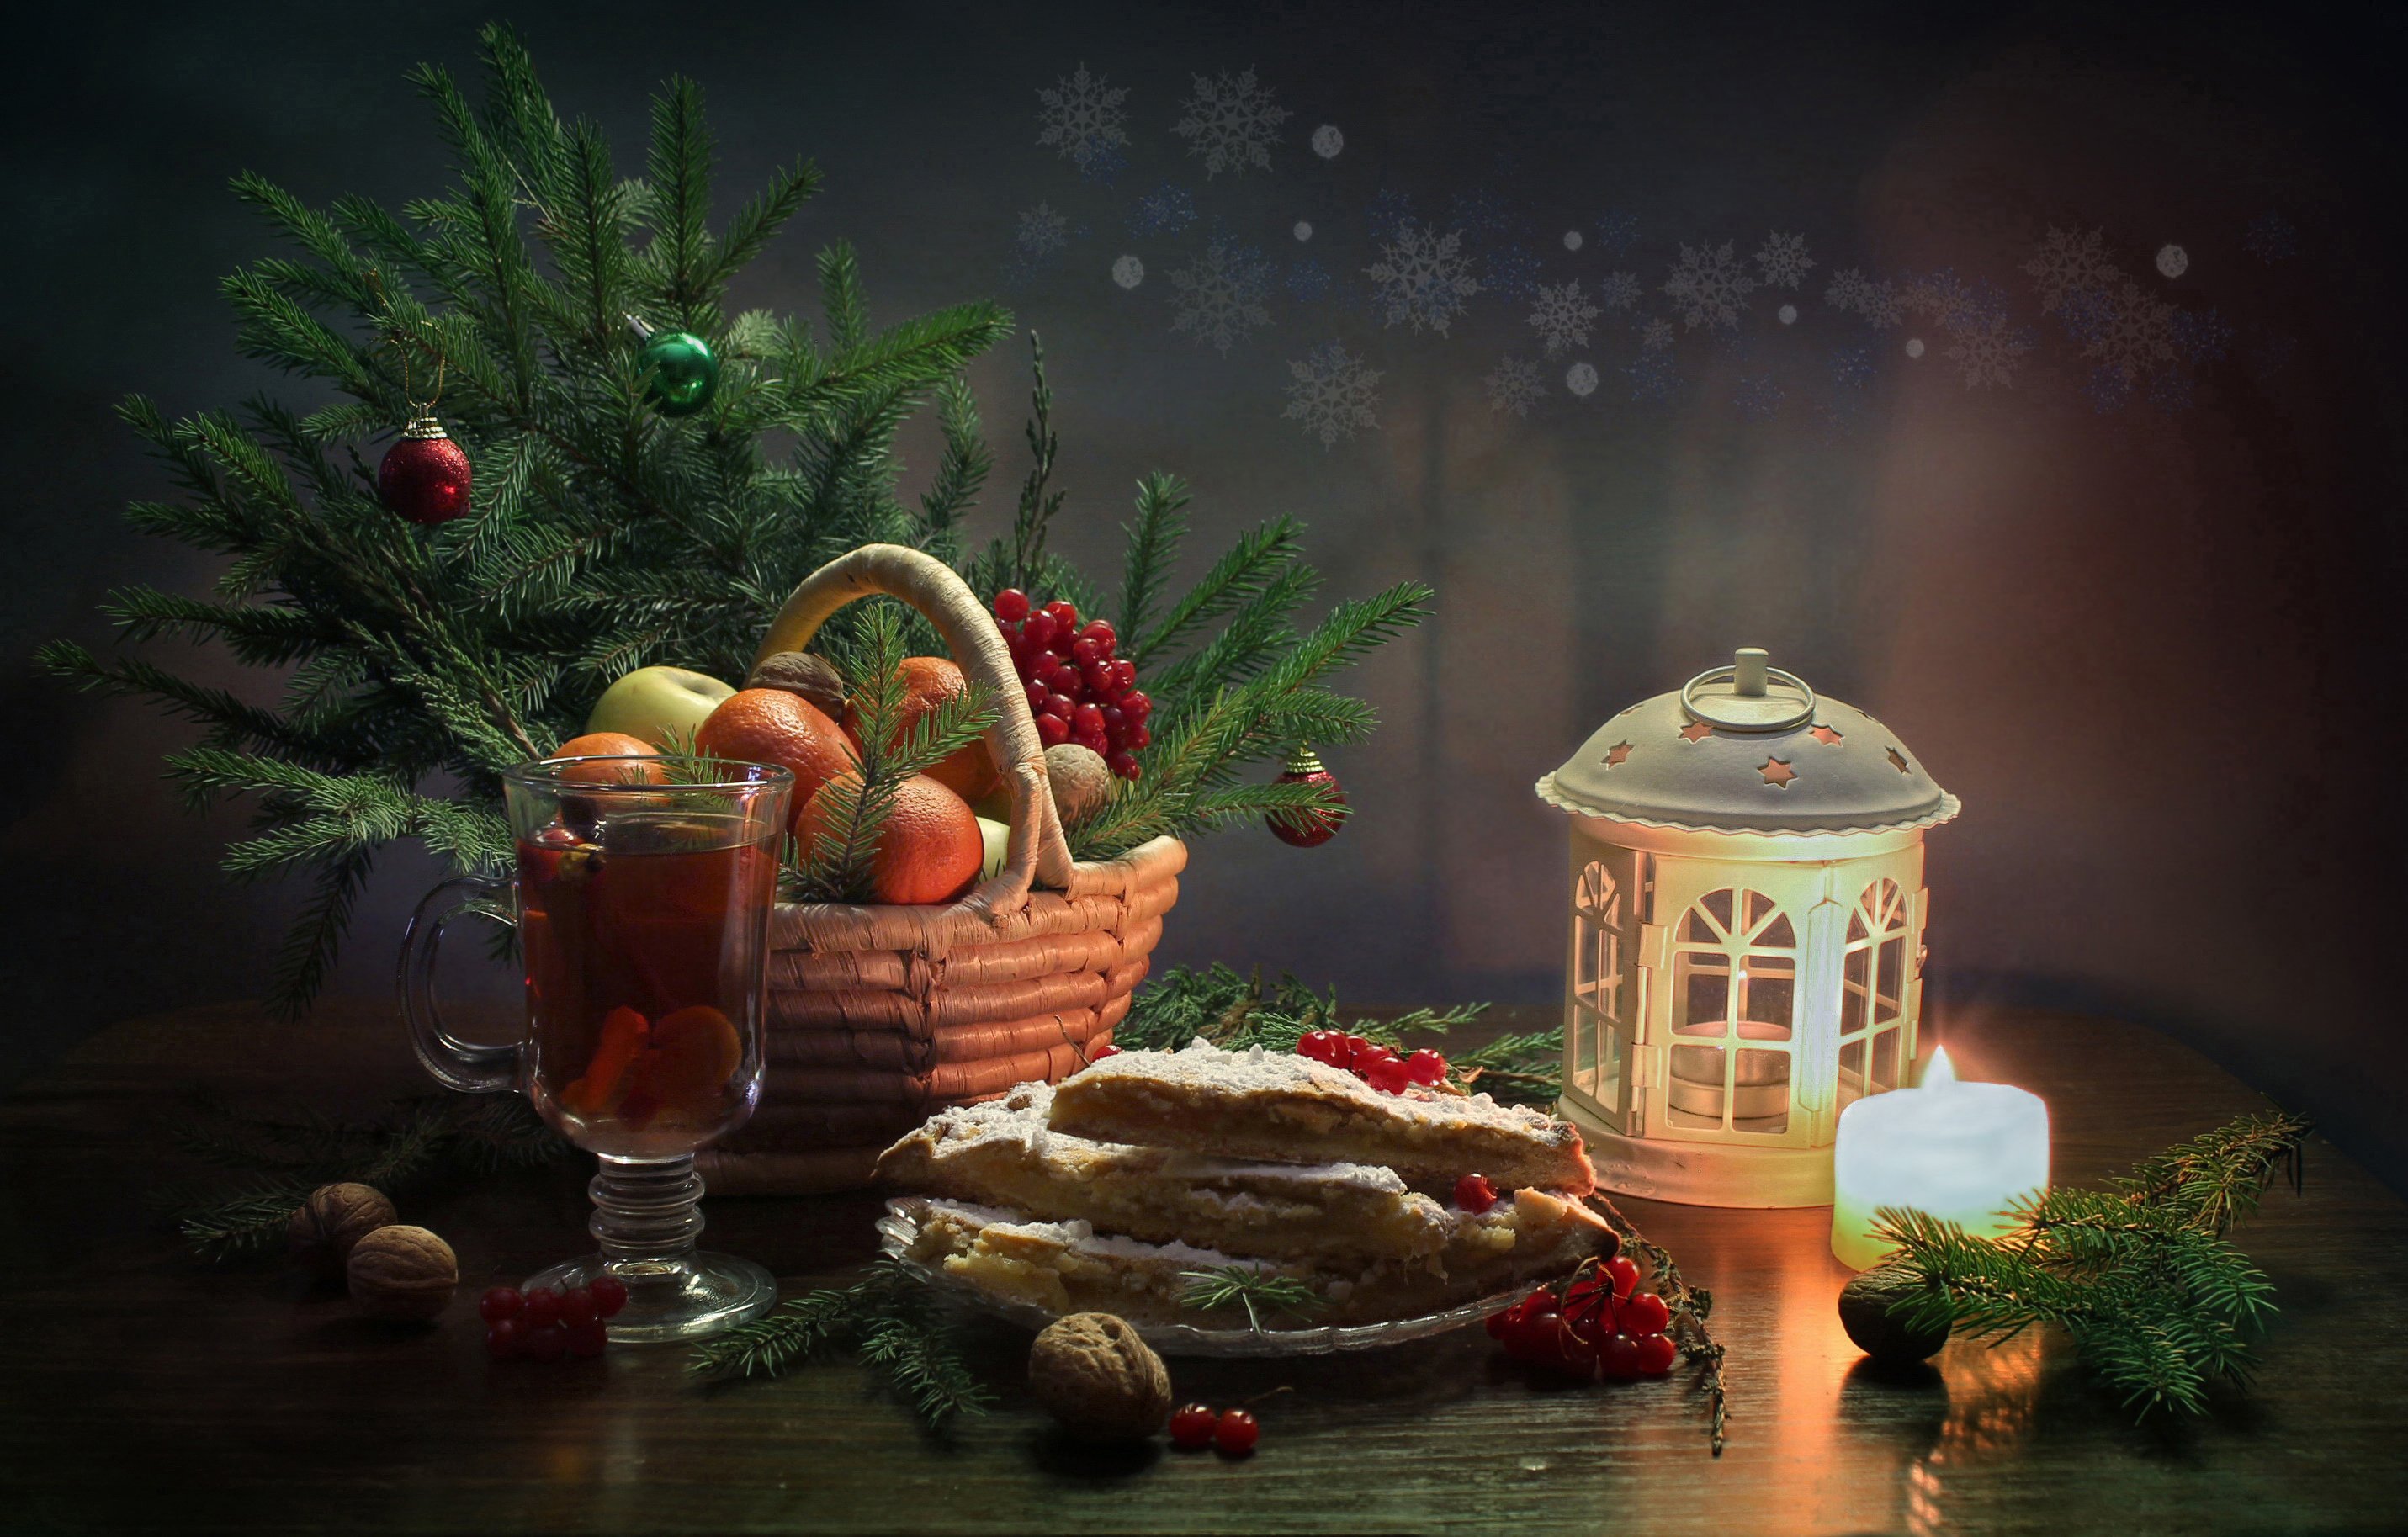 натюрморт, зима, рождество, новый год, фонарик, выпечка елка, украшения, Ковалева Светлана